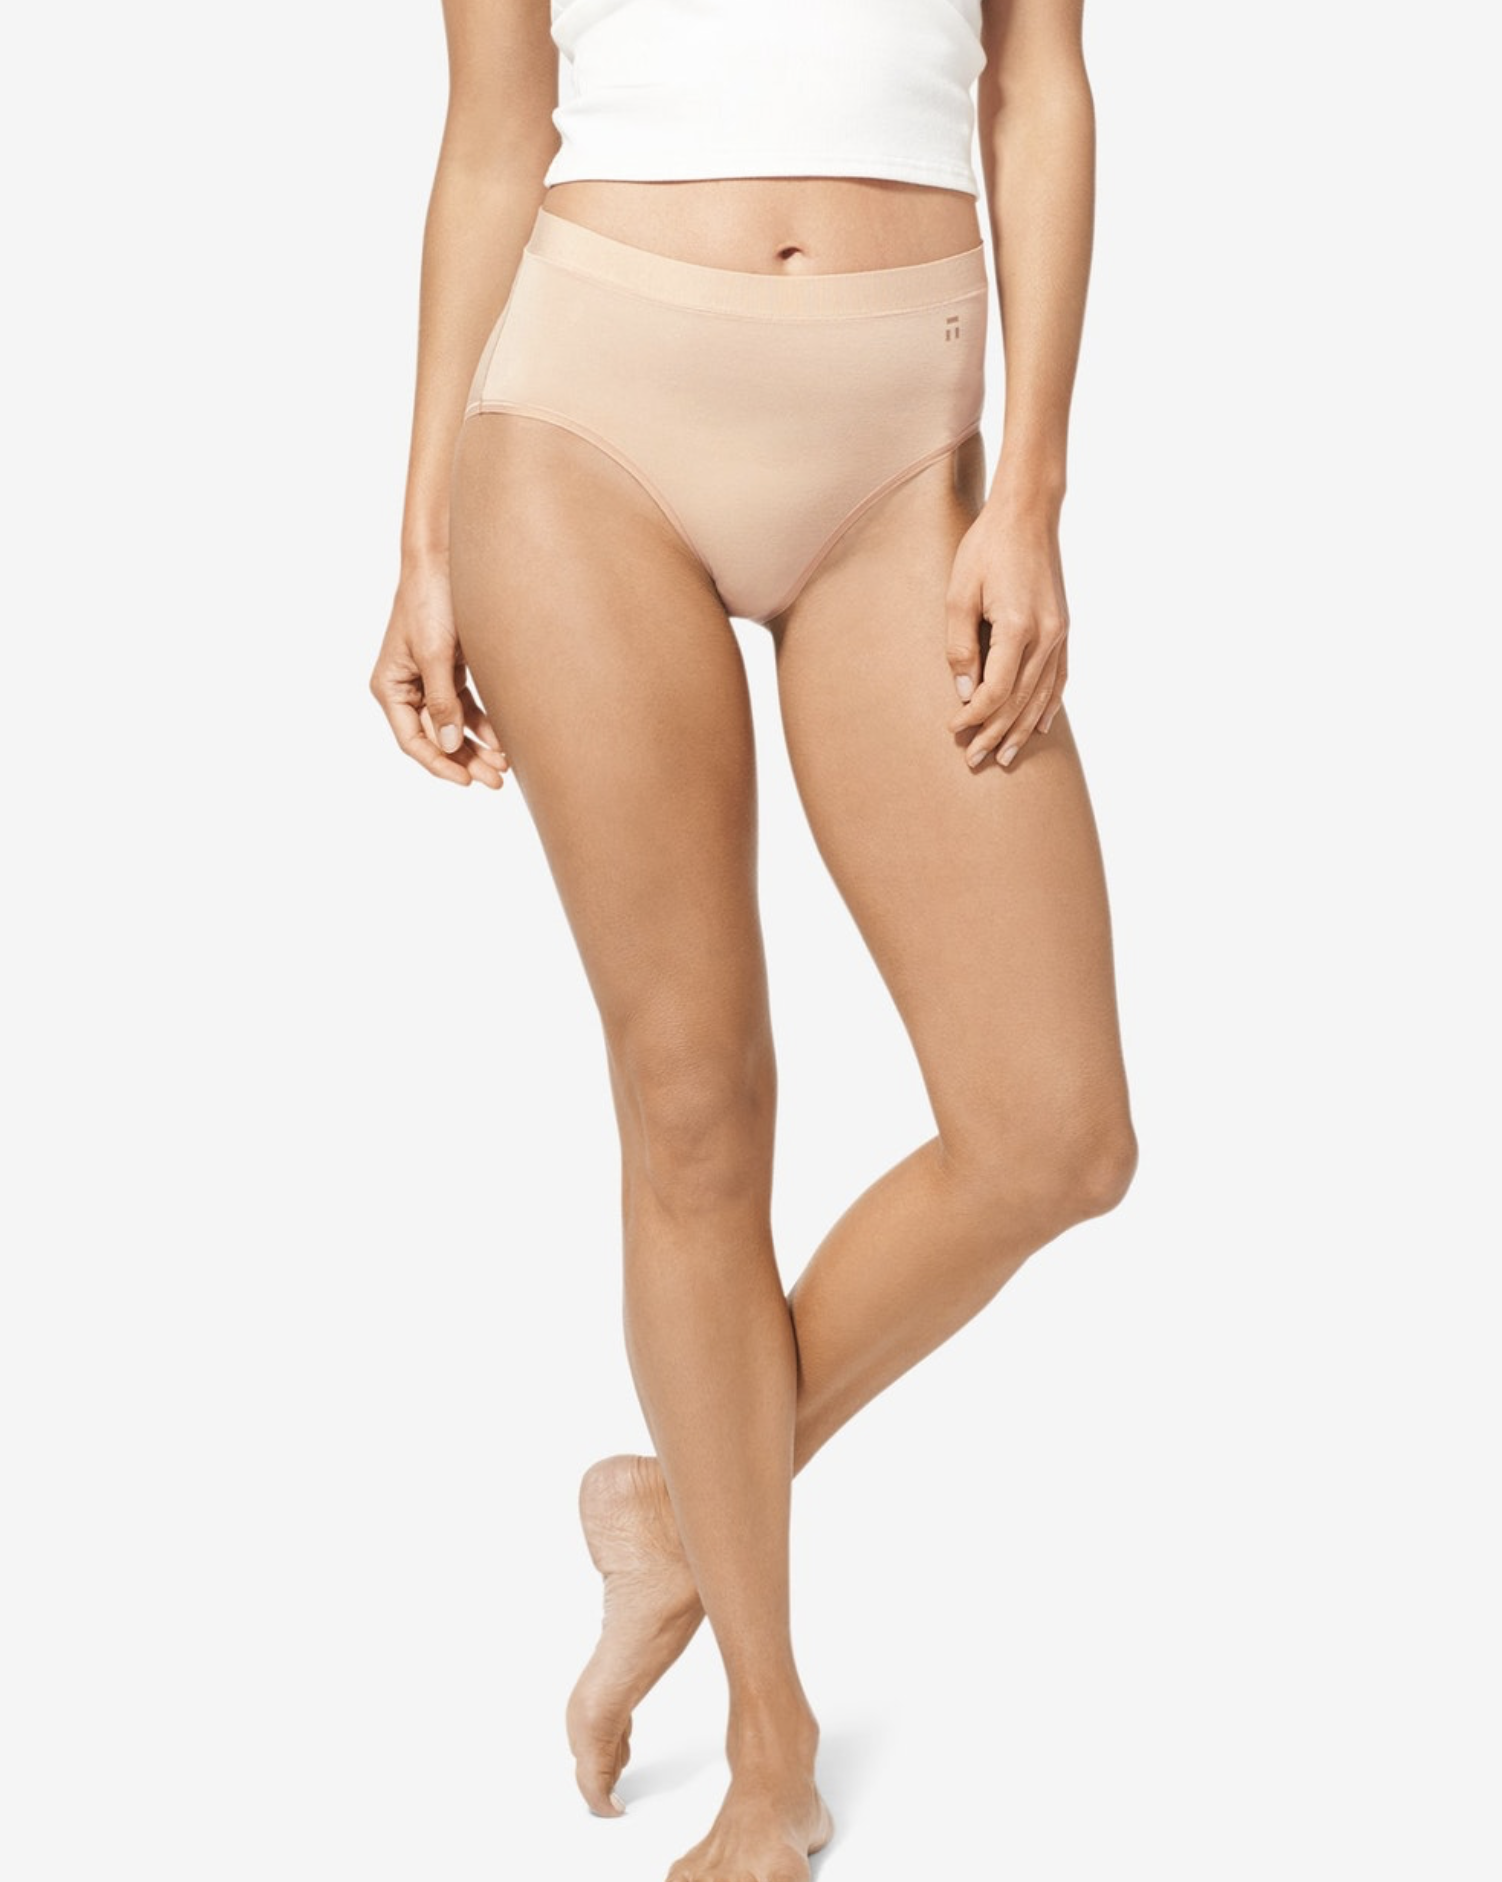 SITM Spring 2022 Underwear Catalog by Just Got 2 Have It! - Issuu